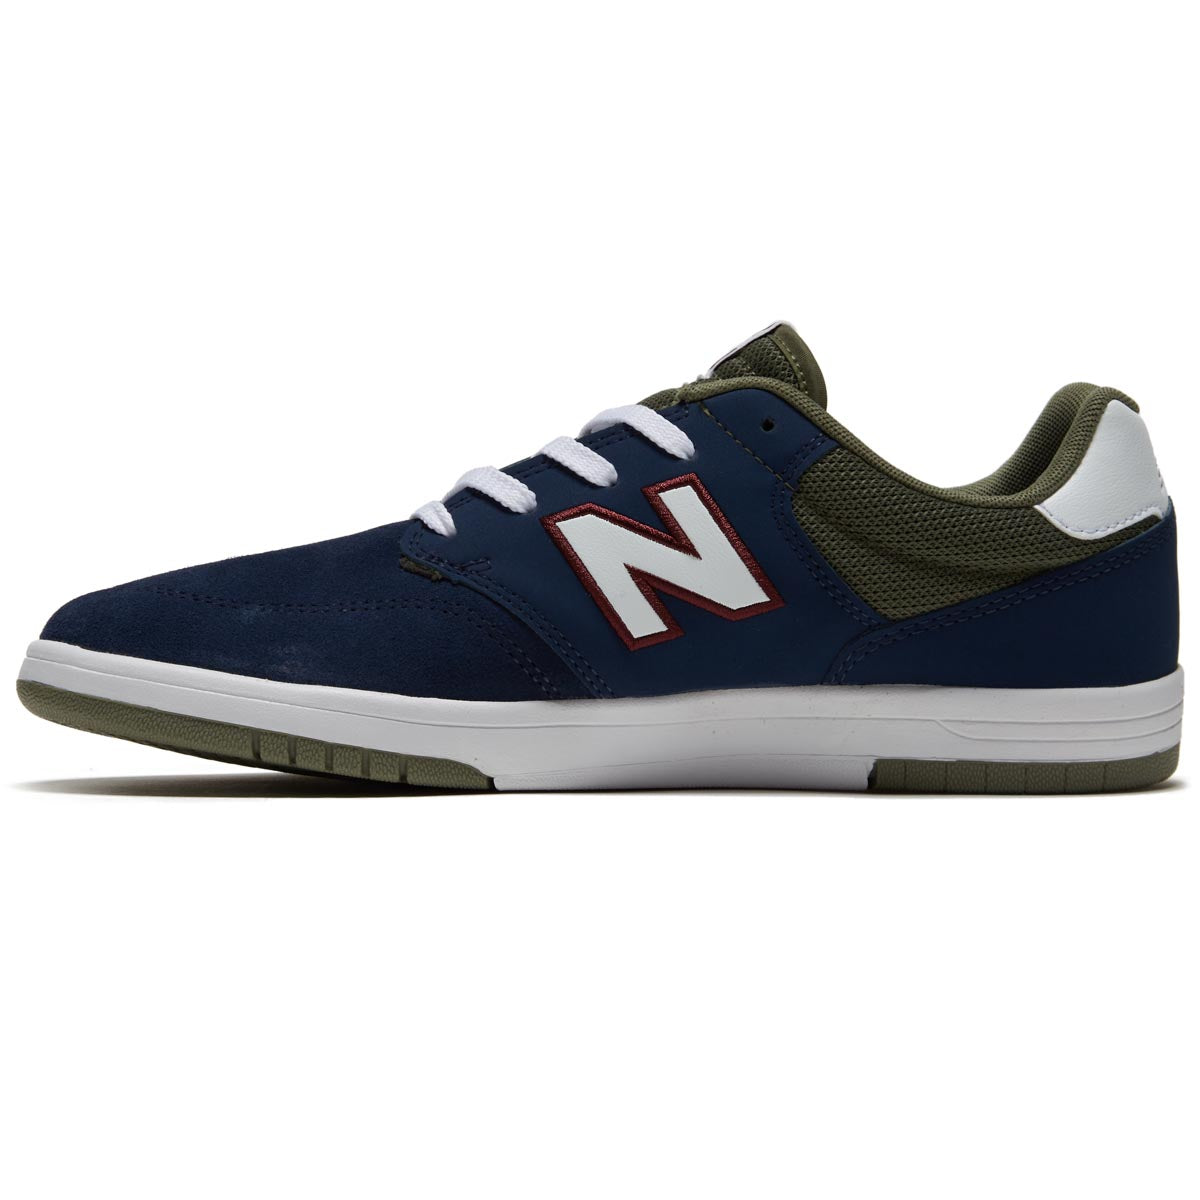 New Balance 425 Shoes - Navy/Olive image 2